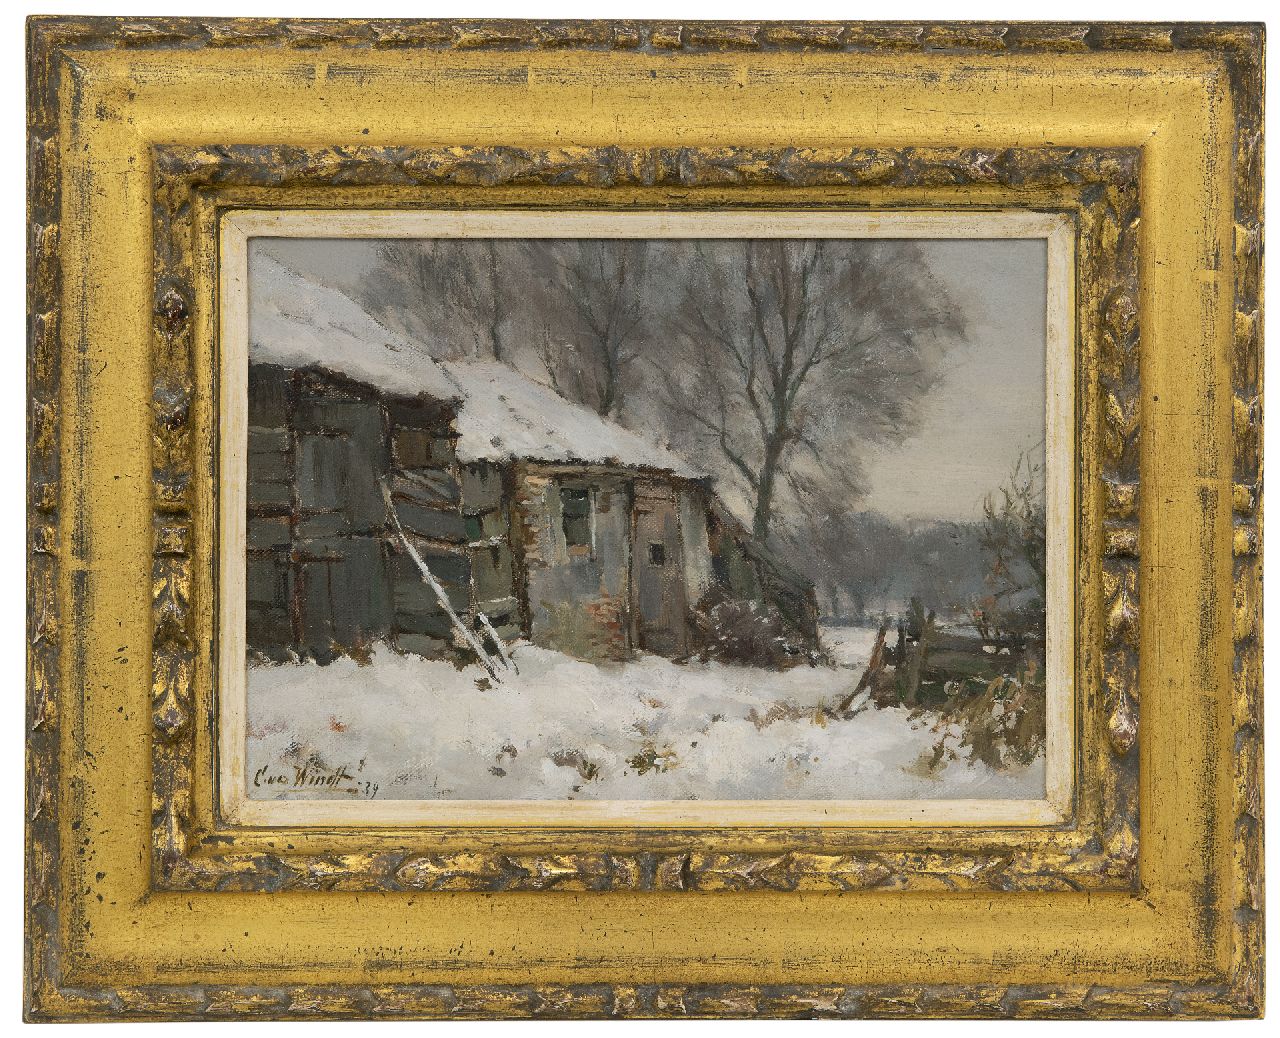 Windt Ch. van der | Christophe 'Chris' van der Windt | Schilderijen te koop aangeboden | Boerderij in de sneeuw, olieverf op doek op paneel 21,5 x 29,8 cm, gesigneerd linksonder en gedateerd '39